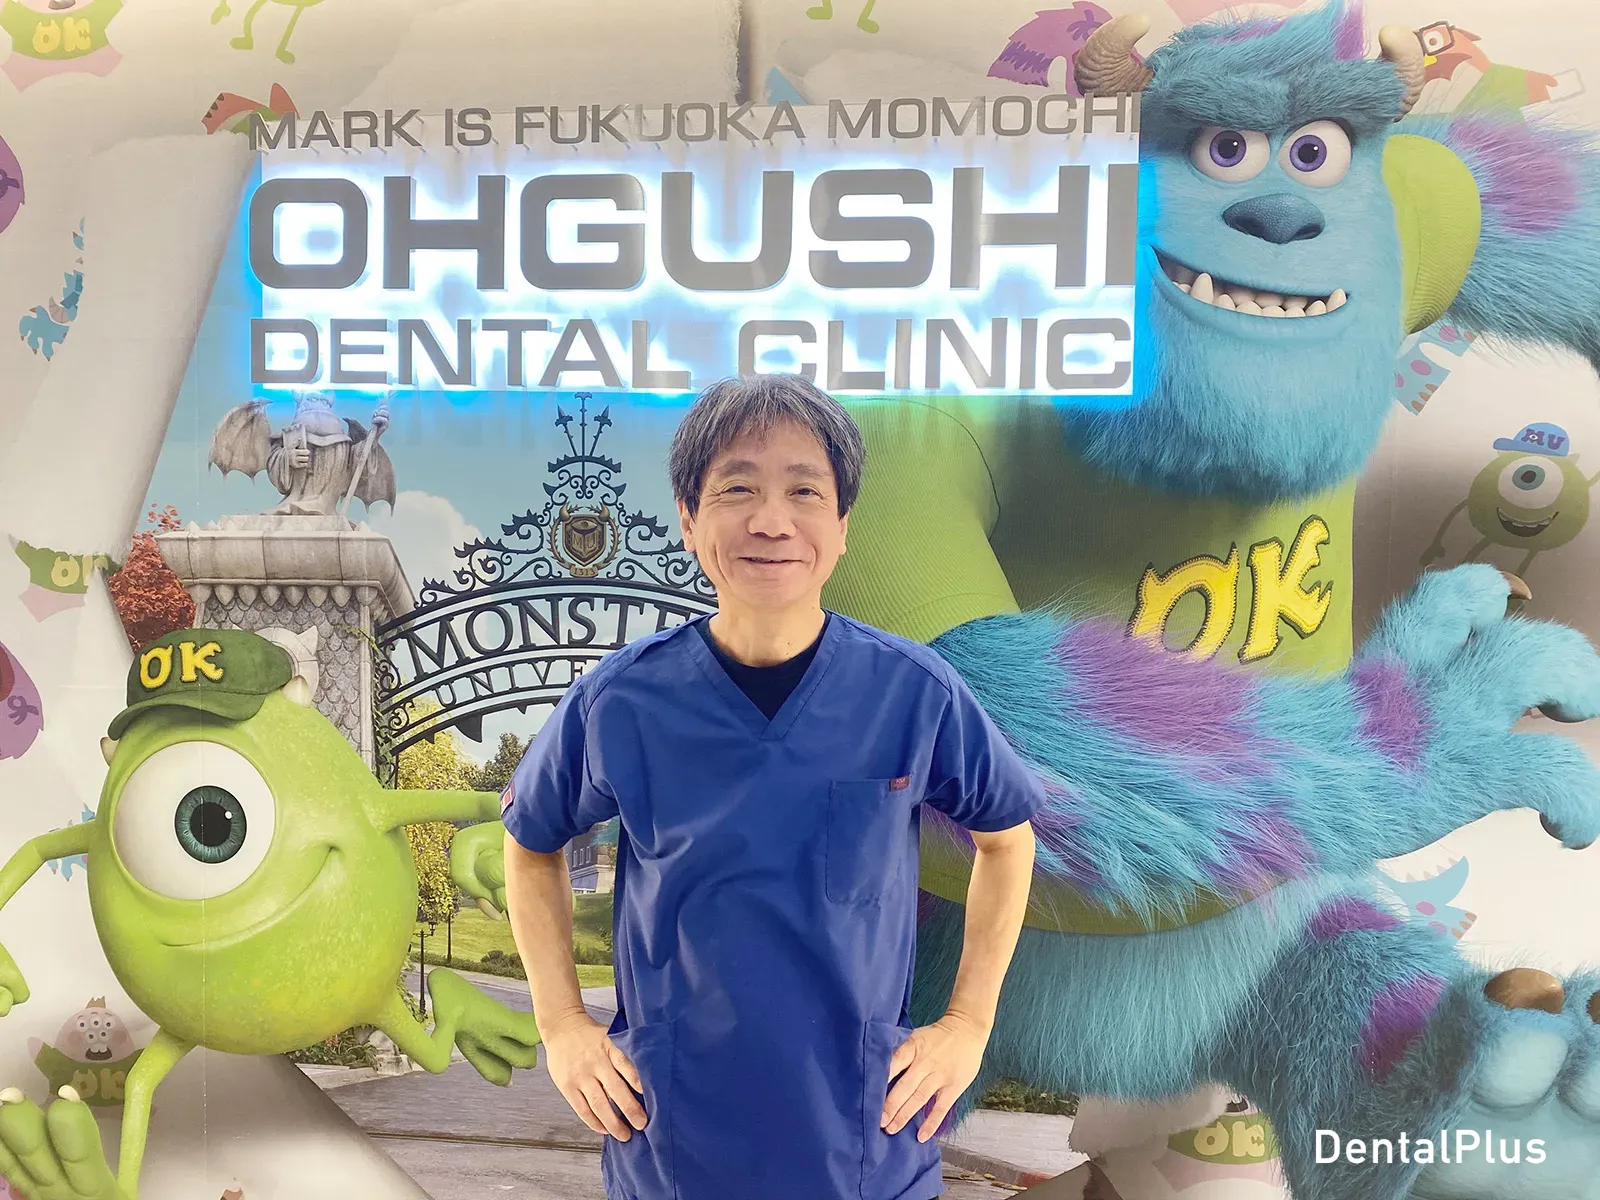 スマイルライン歯科・矯正歯科マークイズ福岡ももちの歯科医師の江崎一郎先生